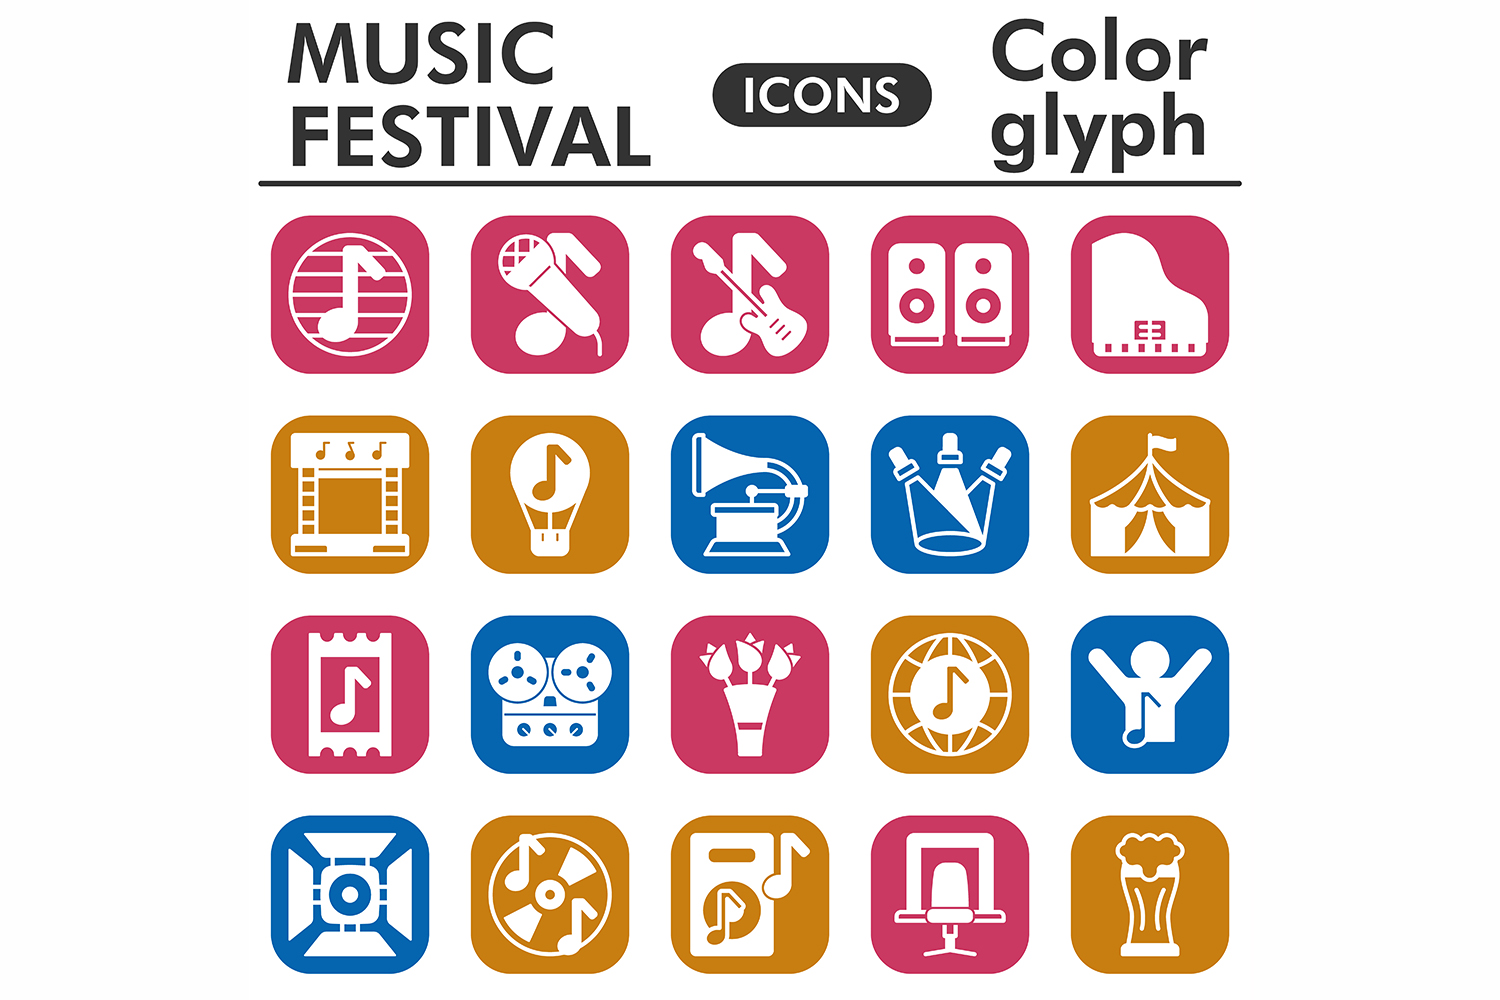 Muzic festival icons set, color glyph pinterest preview image.